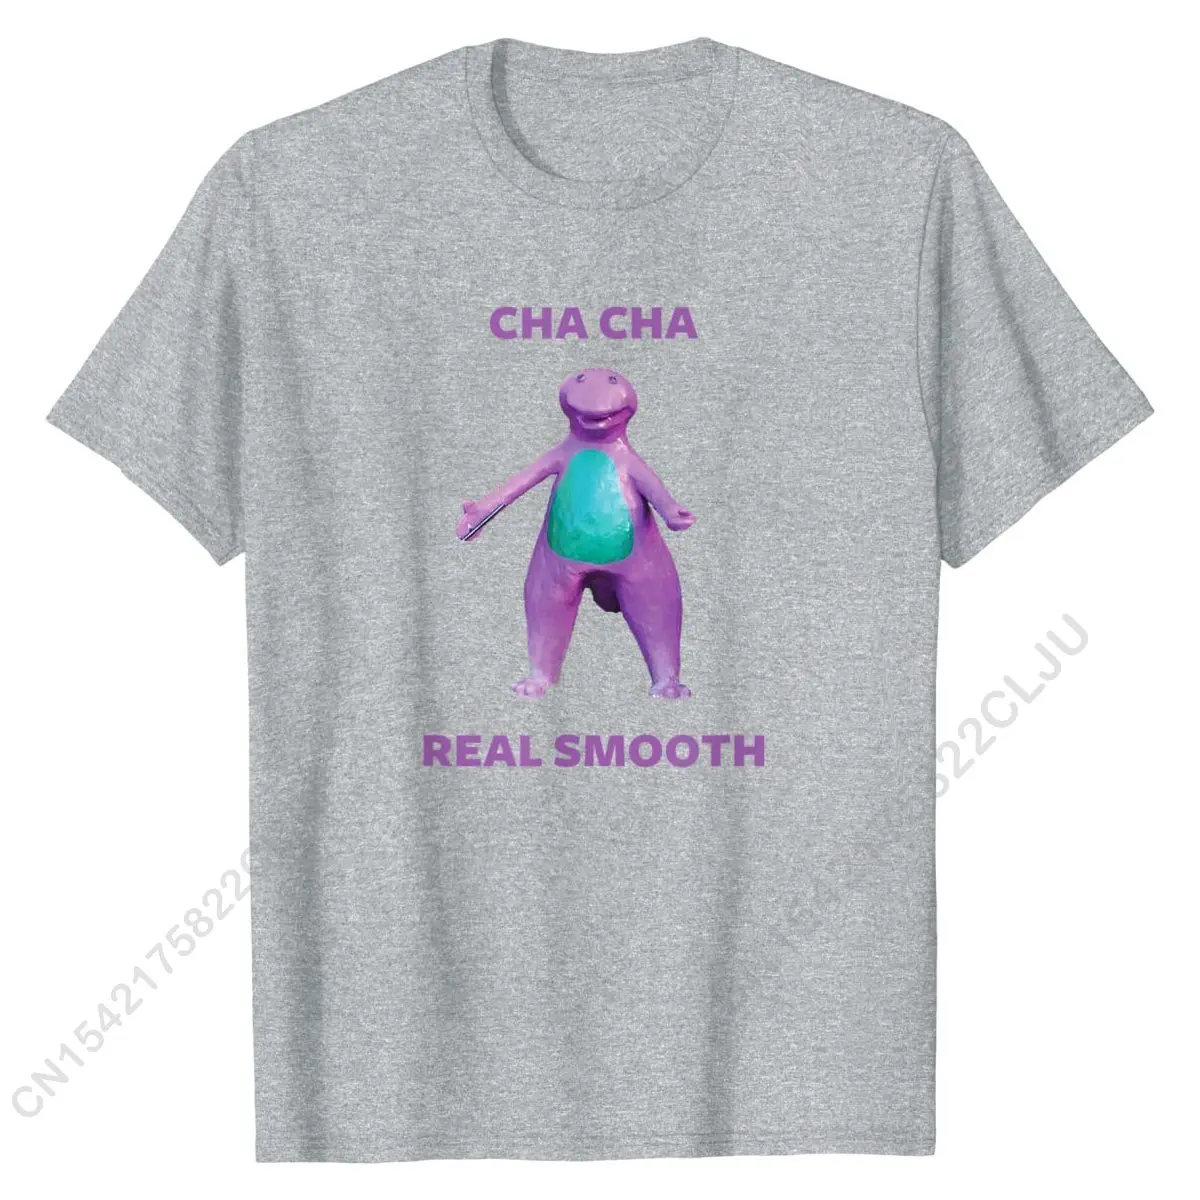 Настоящая гладкая футболка с мемом ча мужские футболки оптовая продажа